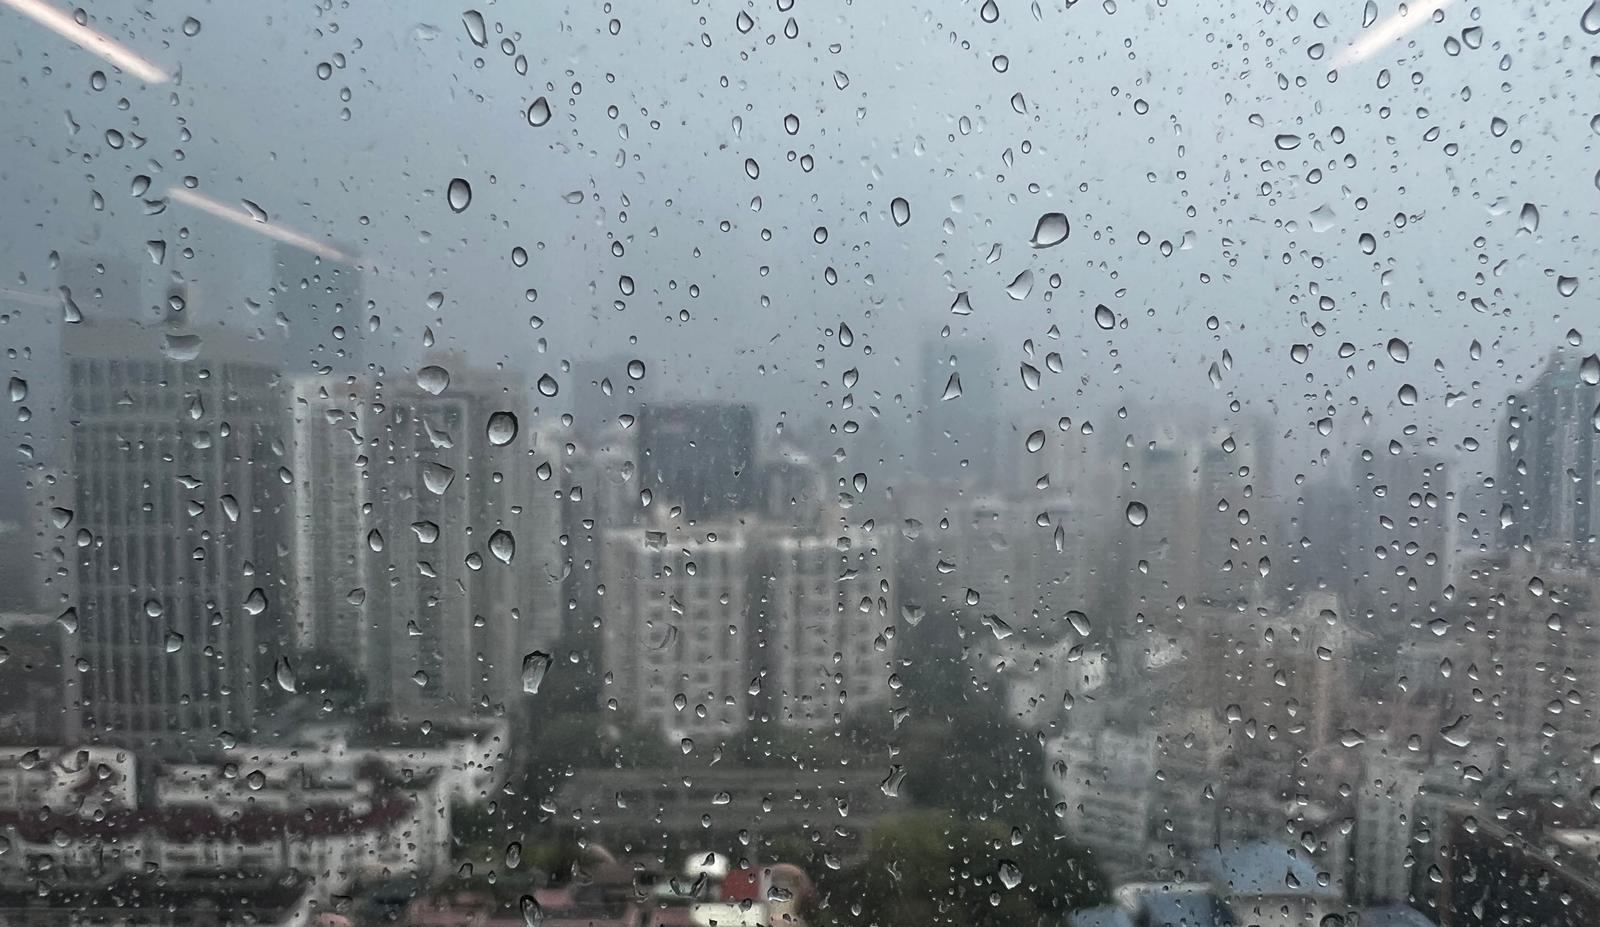 持续更新 | 深圳市解除分区暴雨黄色预警信号